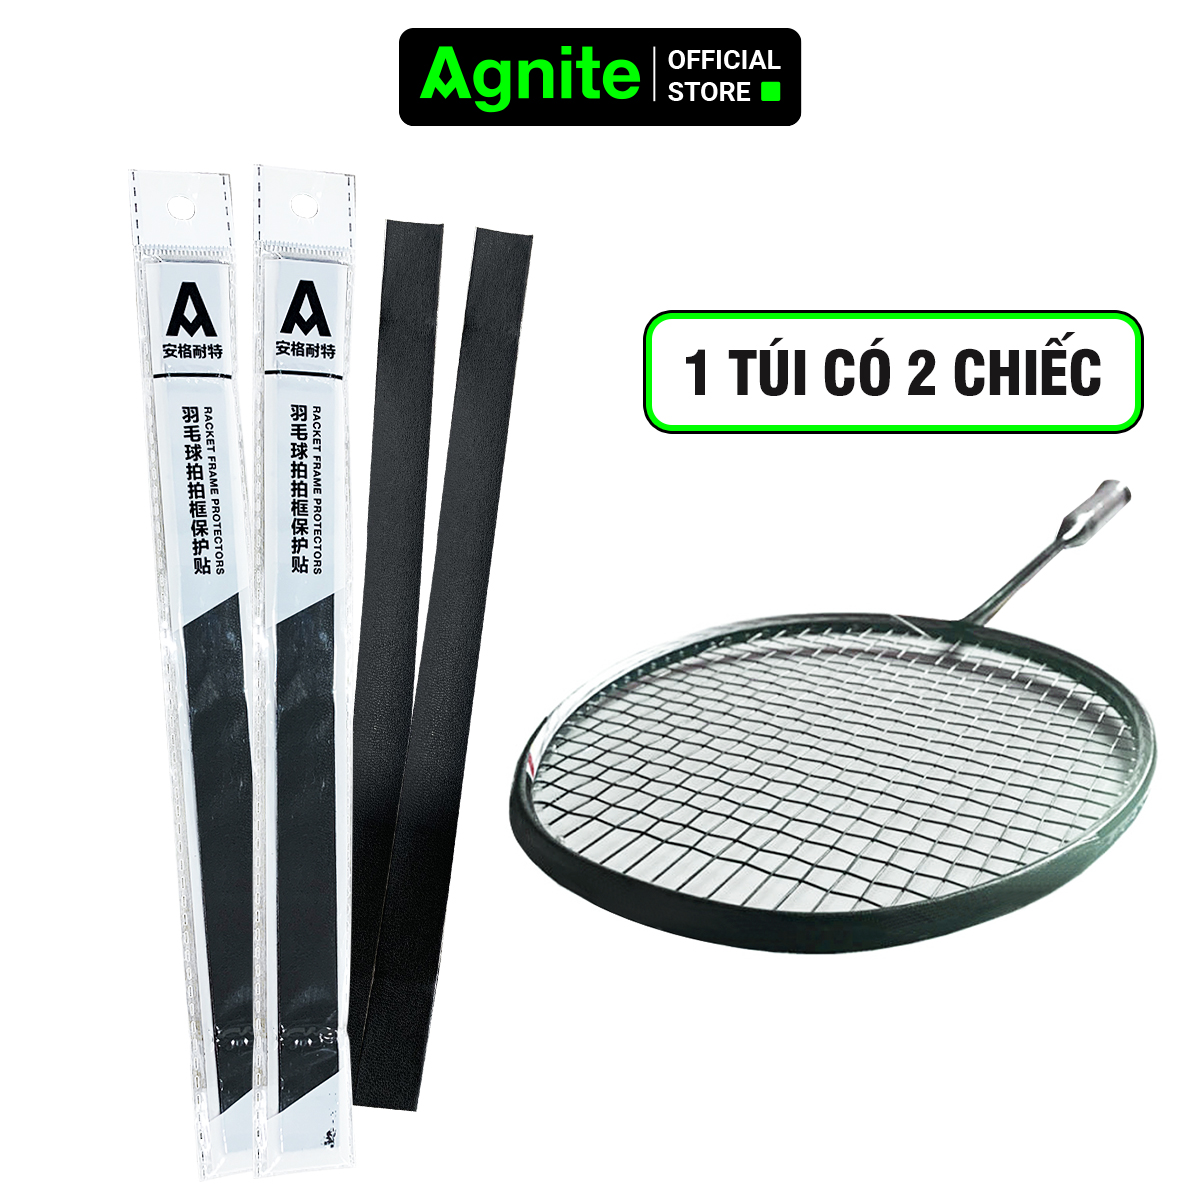 Miếng dán bảo vệ đầu vợt cầu lông Agnite tránh trầy xước, vợt tennis, da PU chống mài mòn, giá siêu rẻ